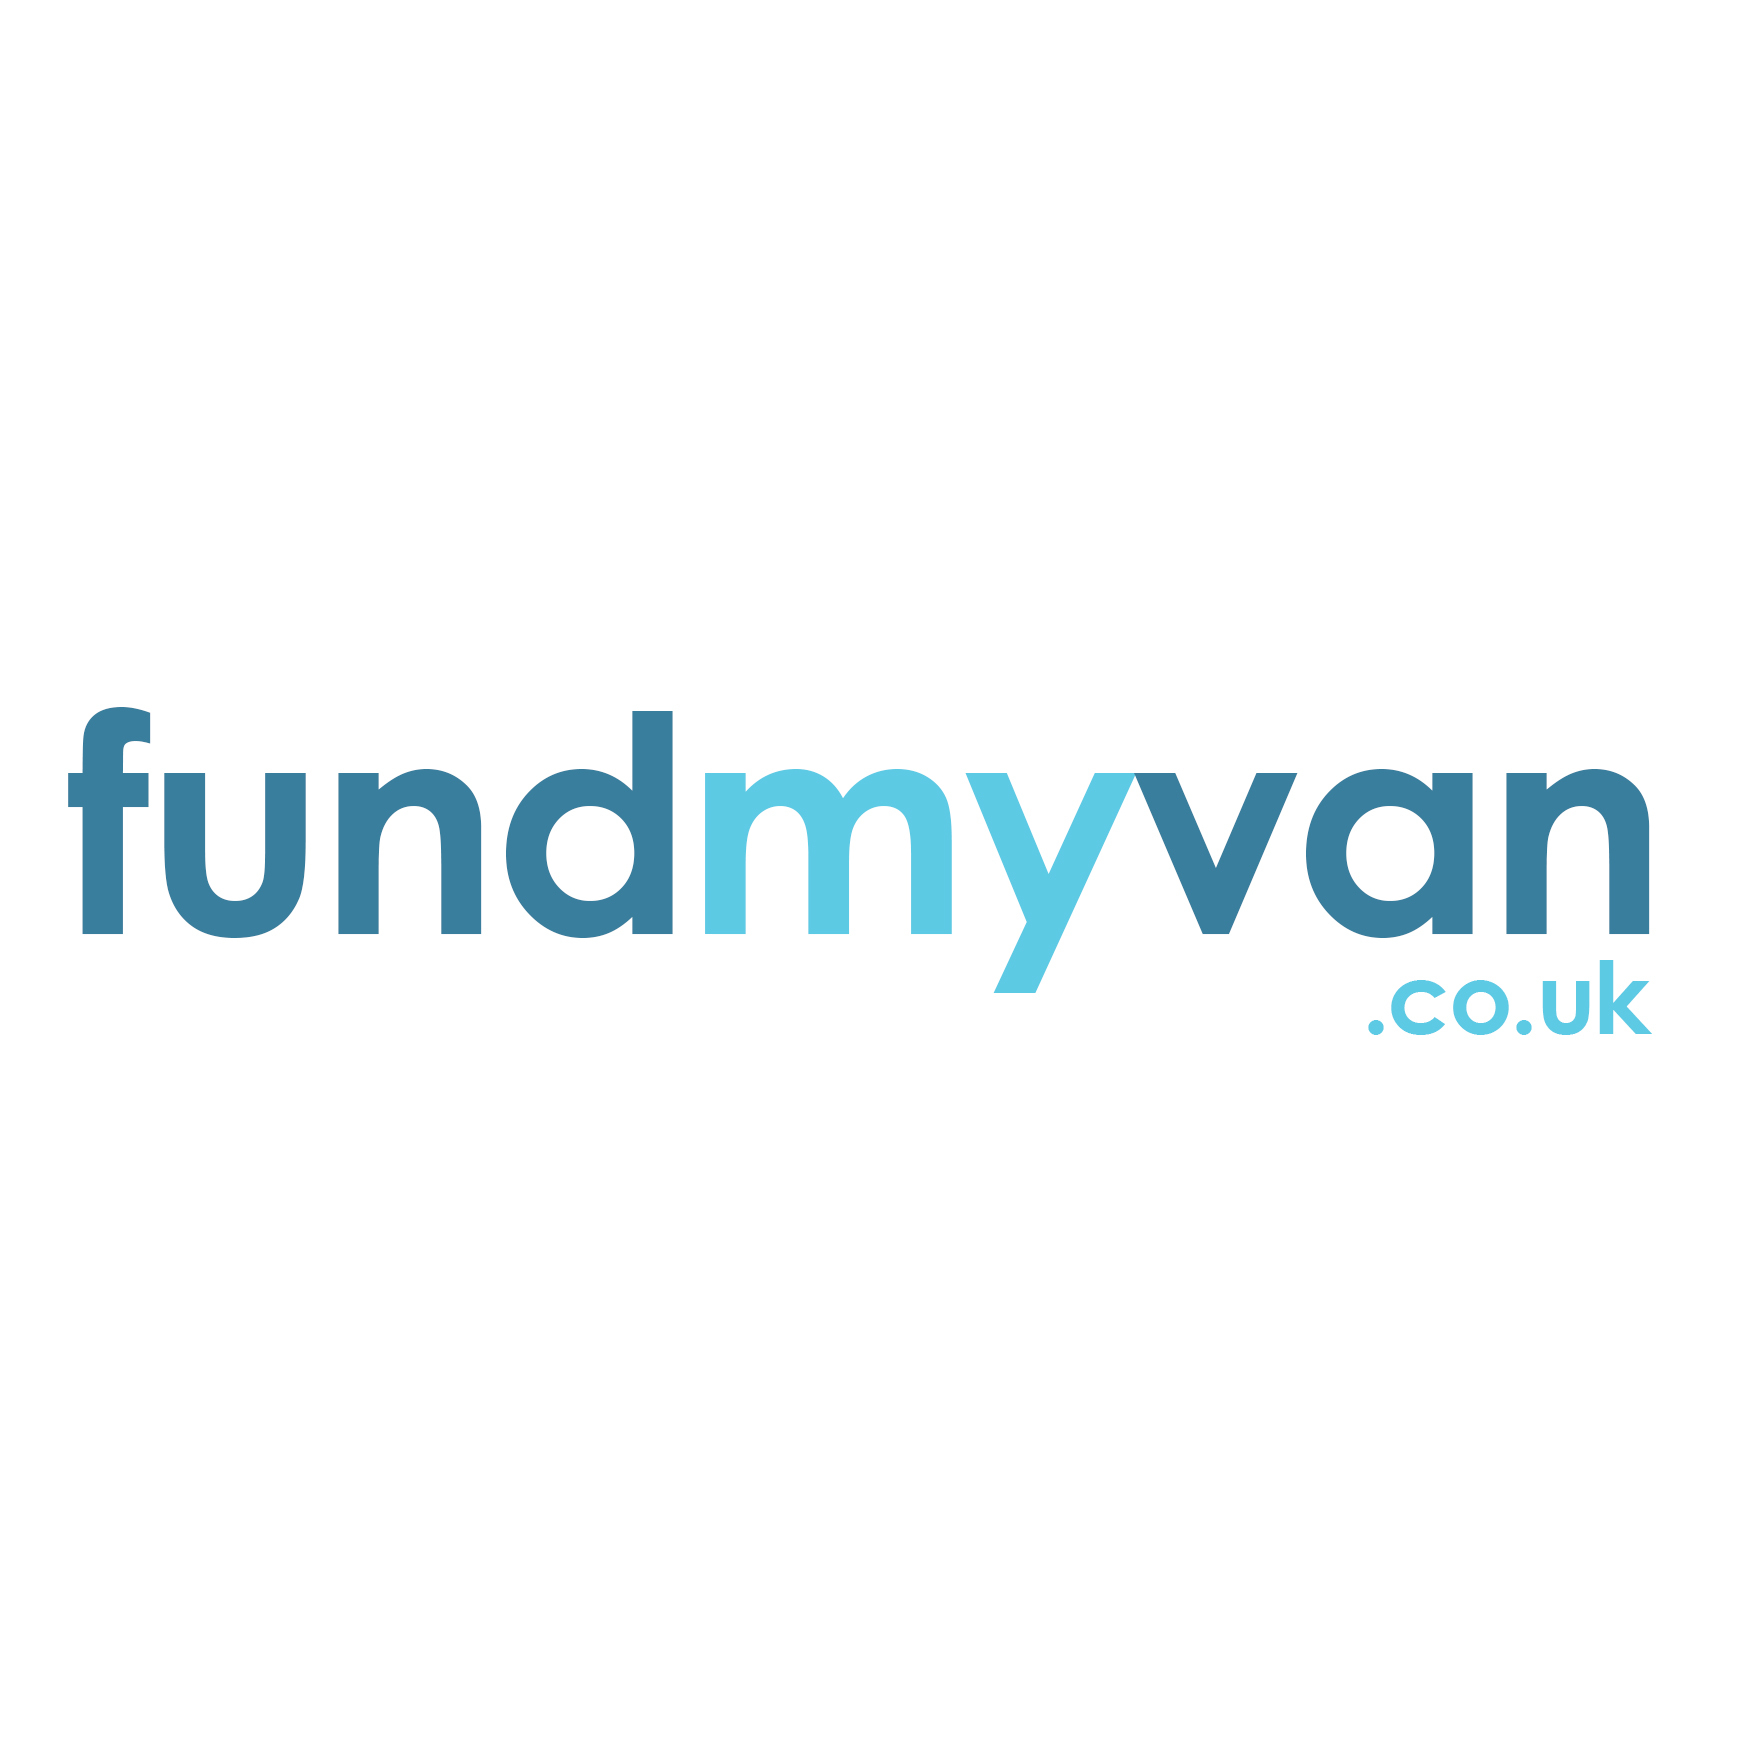 Fund My Van - Fforestfach, Swansea, United Kingdom